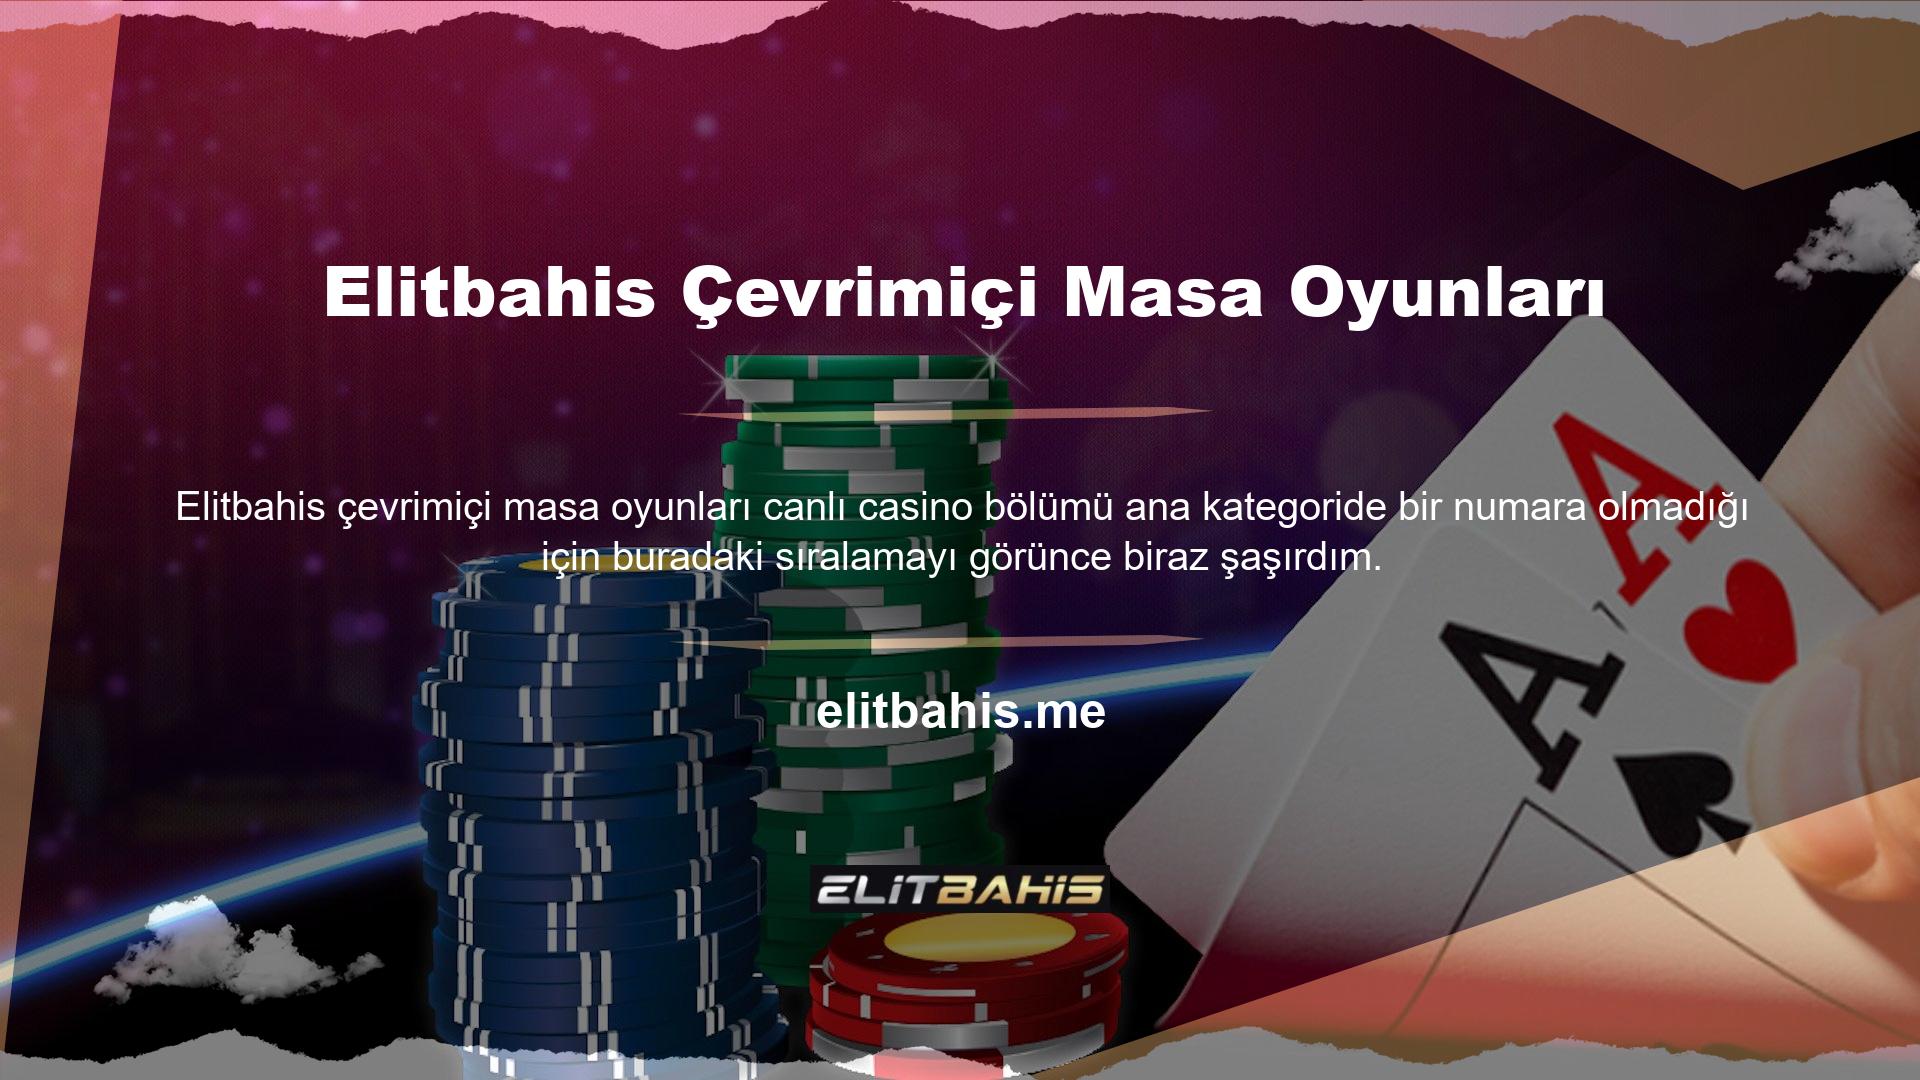 Elitbahis canlı casino bölümünün siteye girdiğiniz anda karşınıza çıkması, içerdiği oyun yapısının zenginliğinin bir göstergesi olarak görülebilir